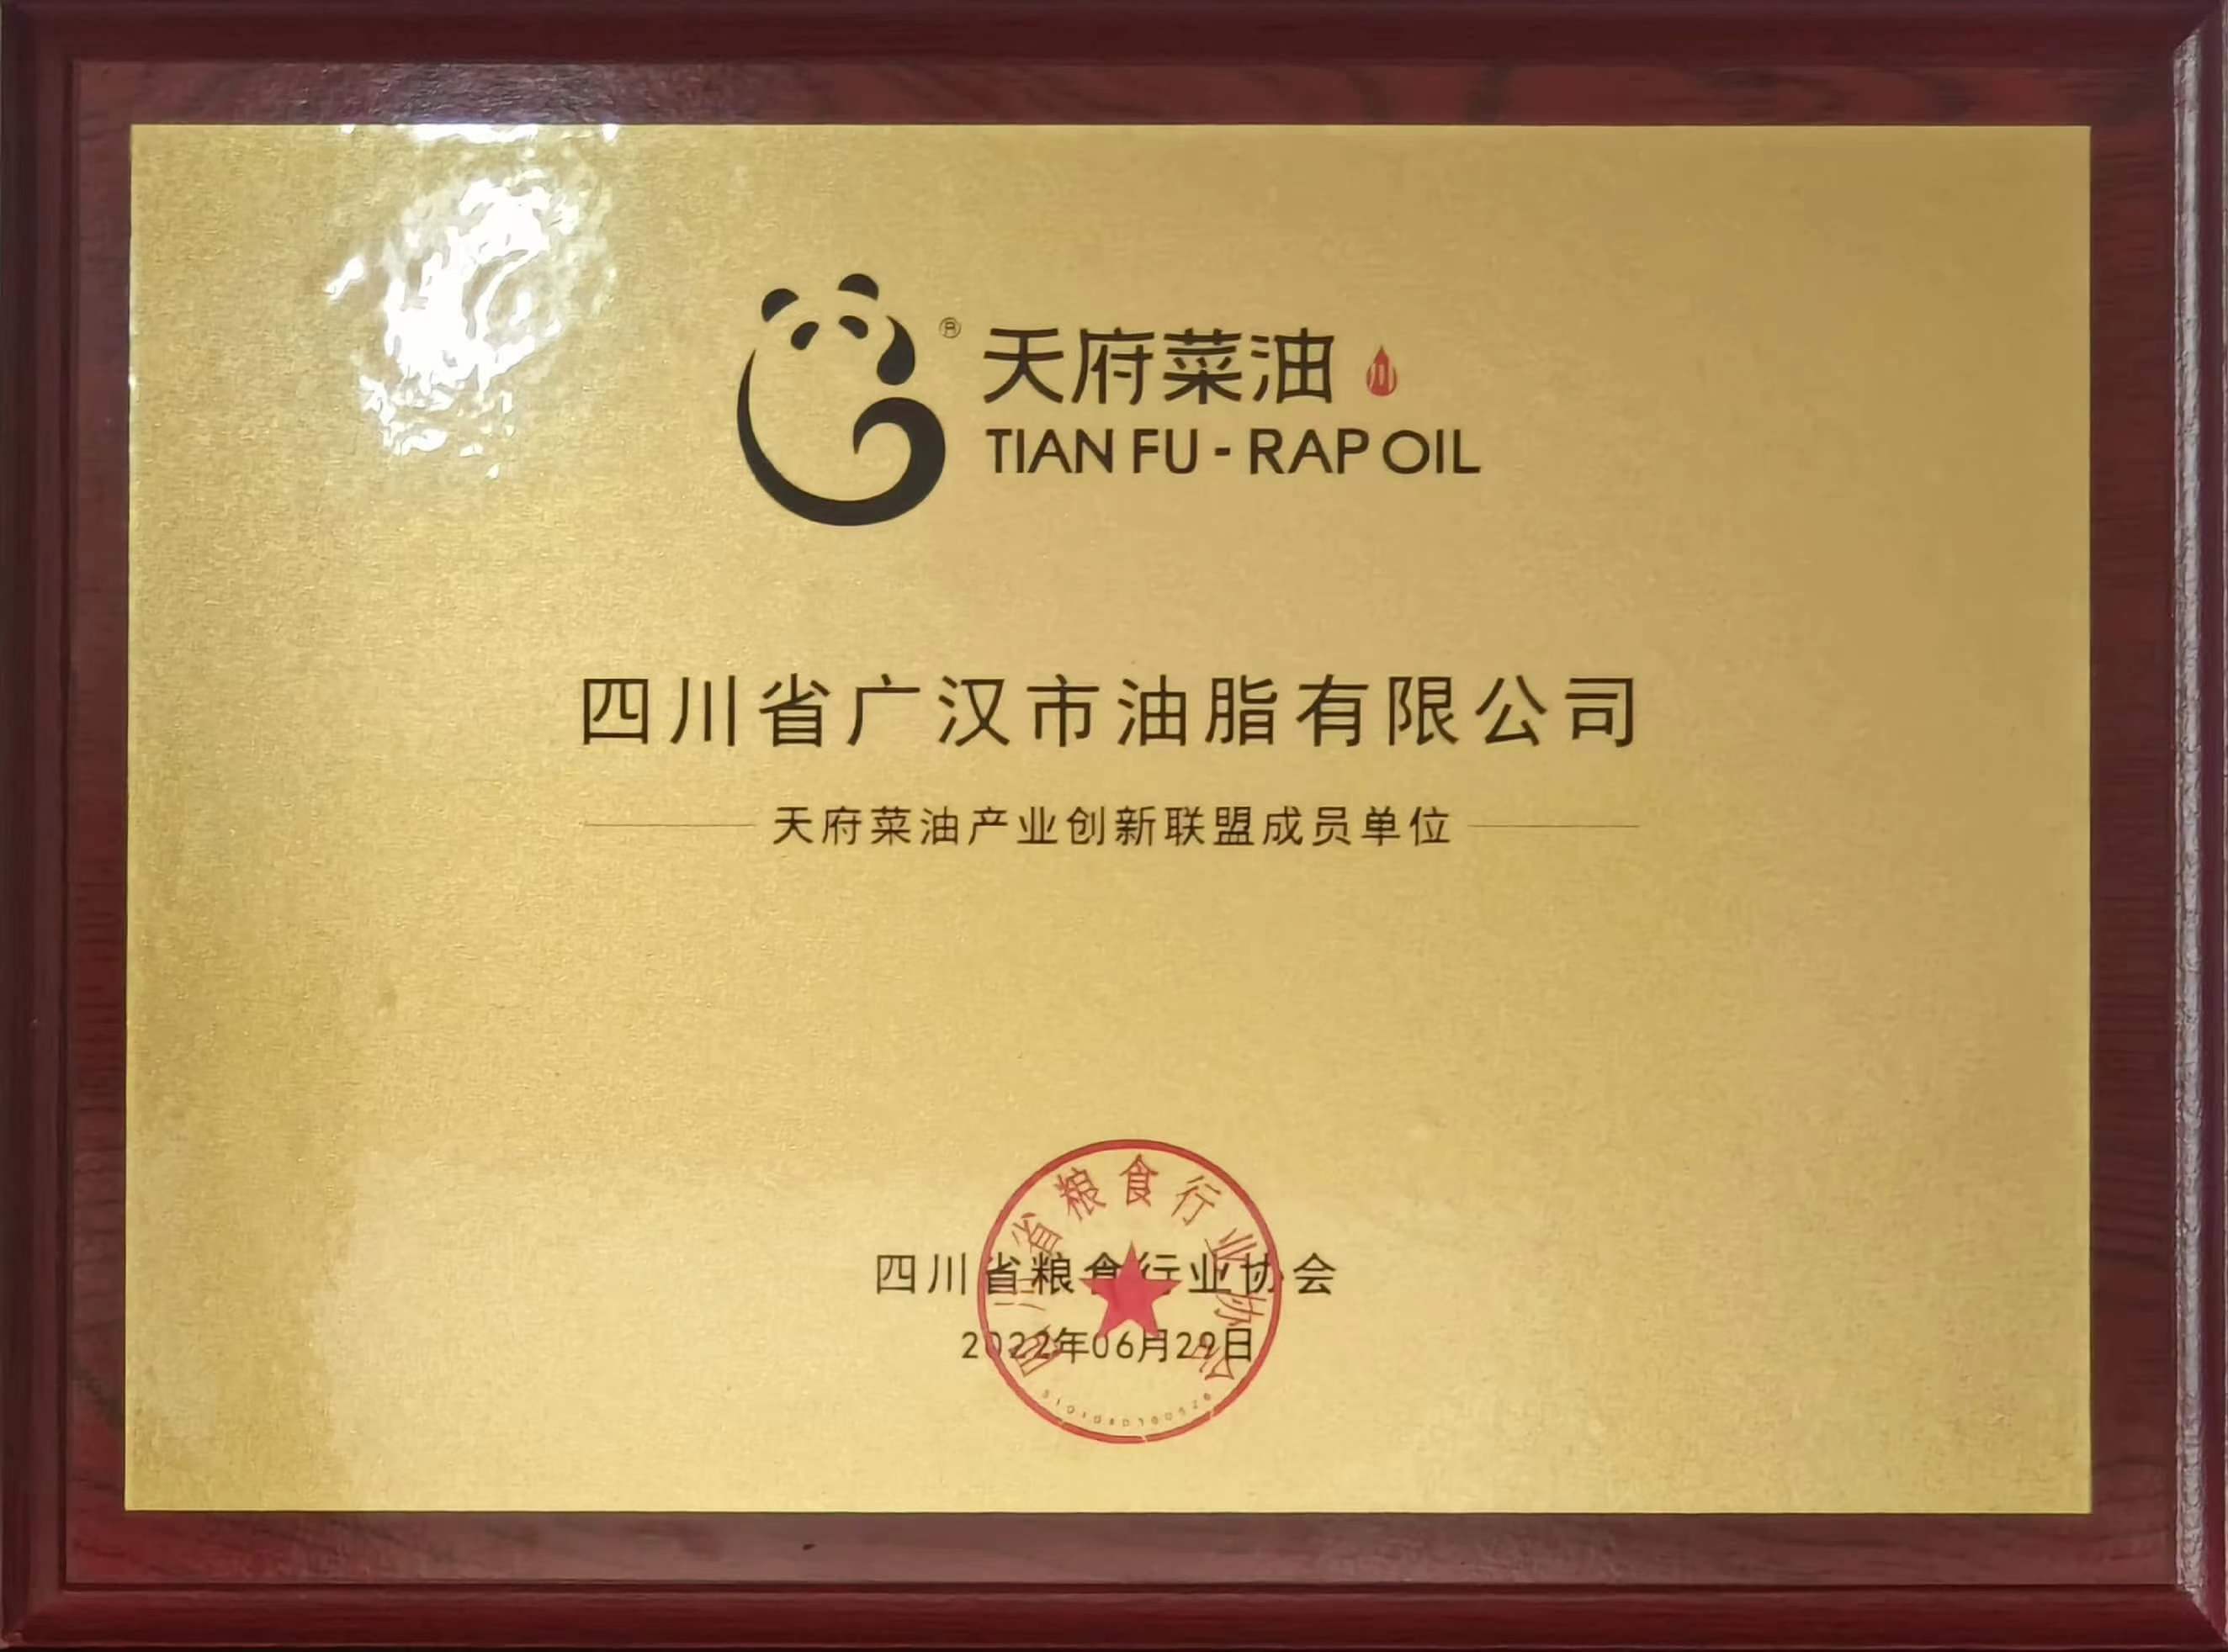 恭賀四川省廣漢市油脂有限公司成為“天府菜油產業創新聯盟成員單位”